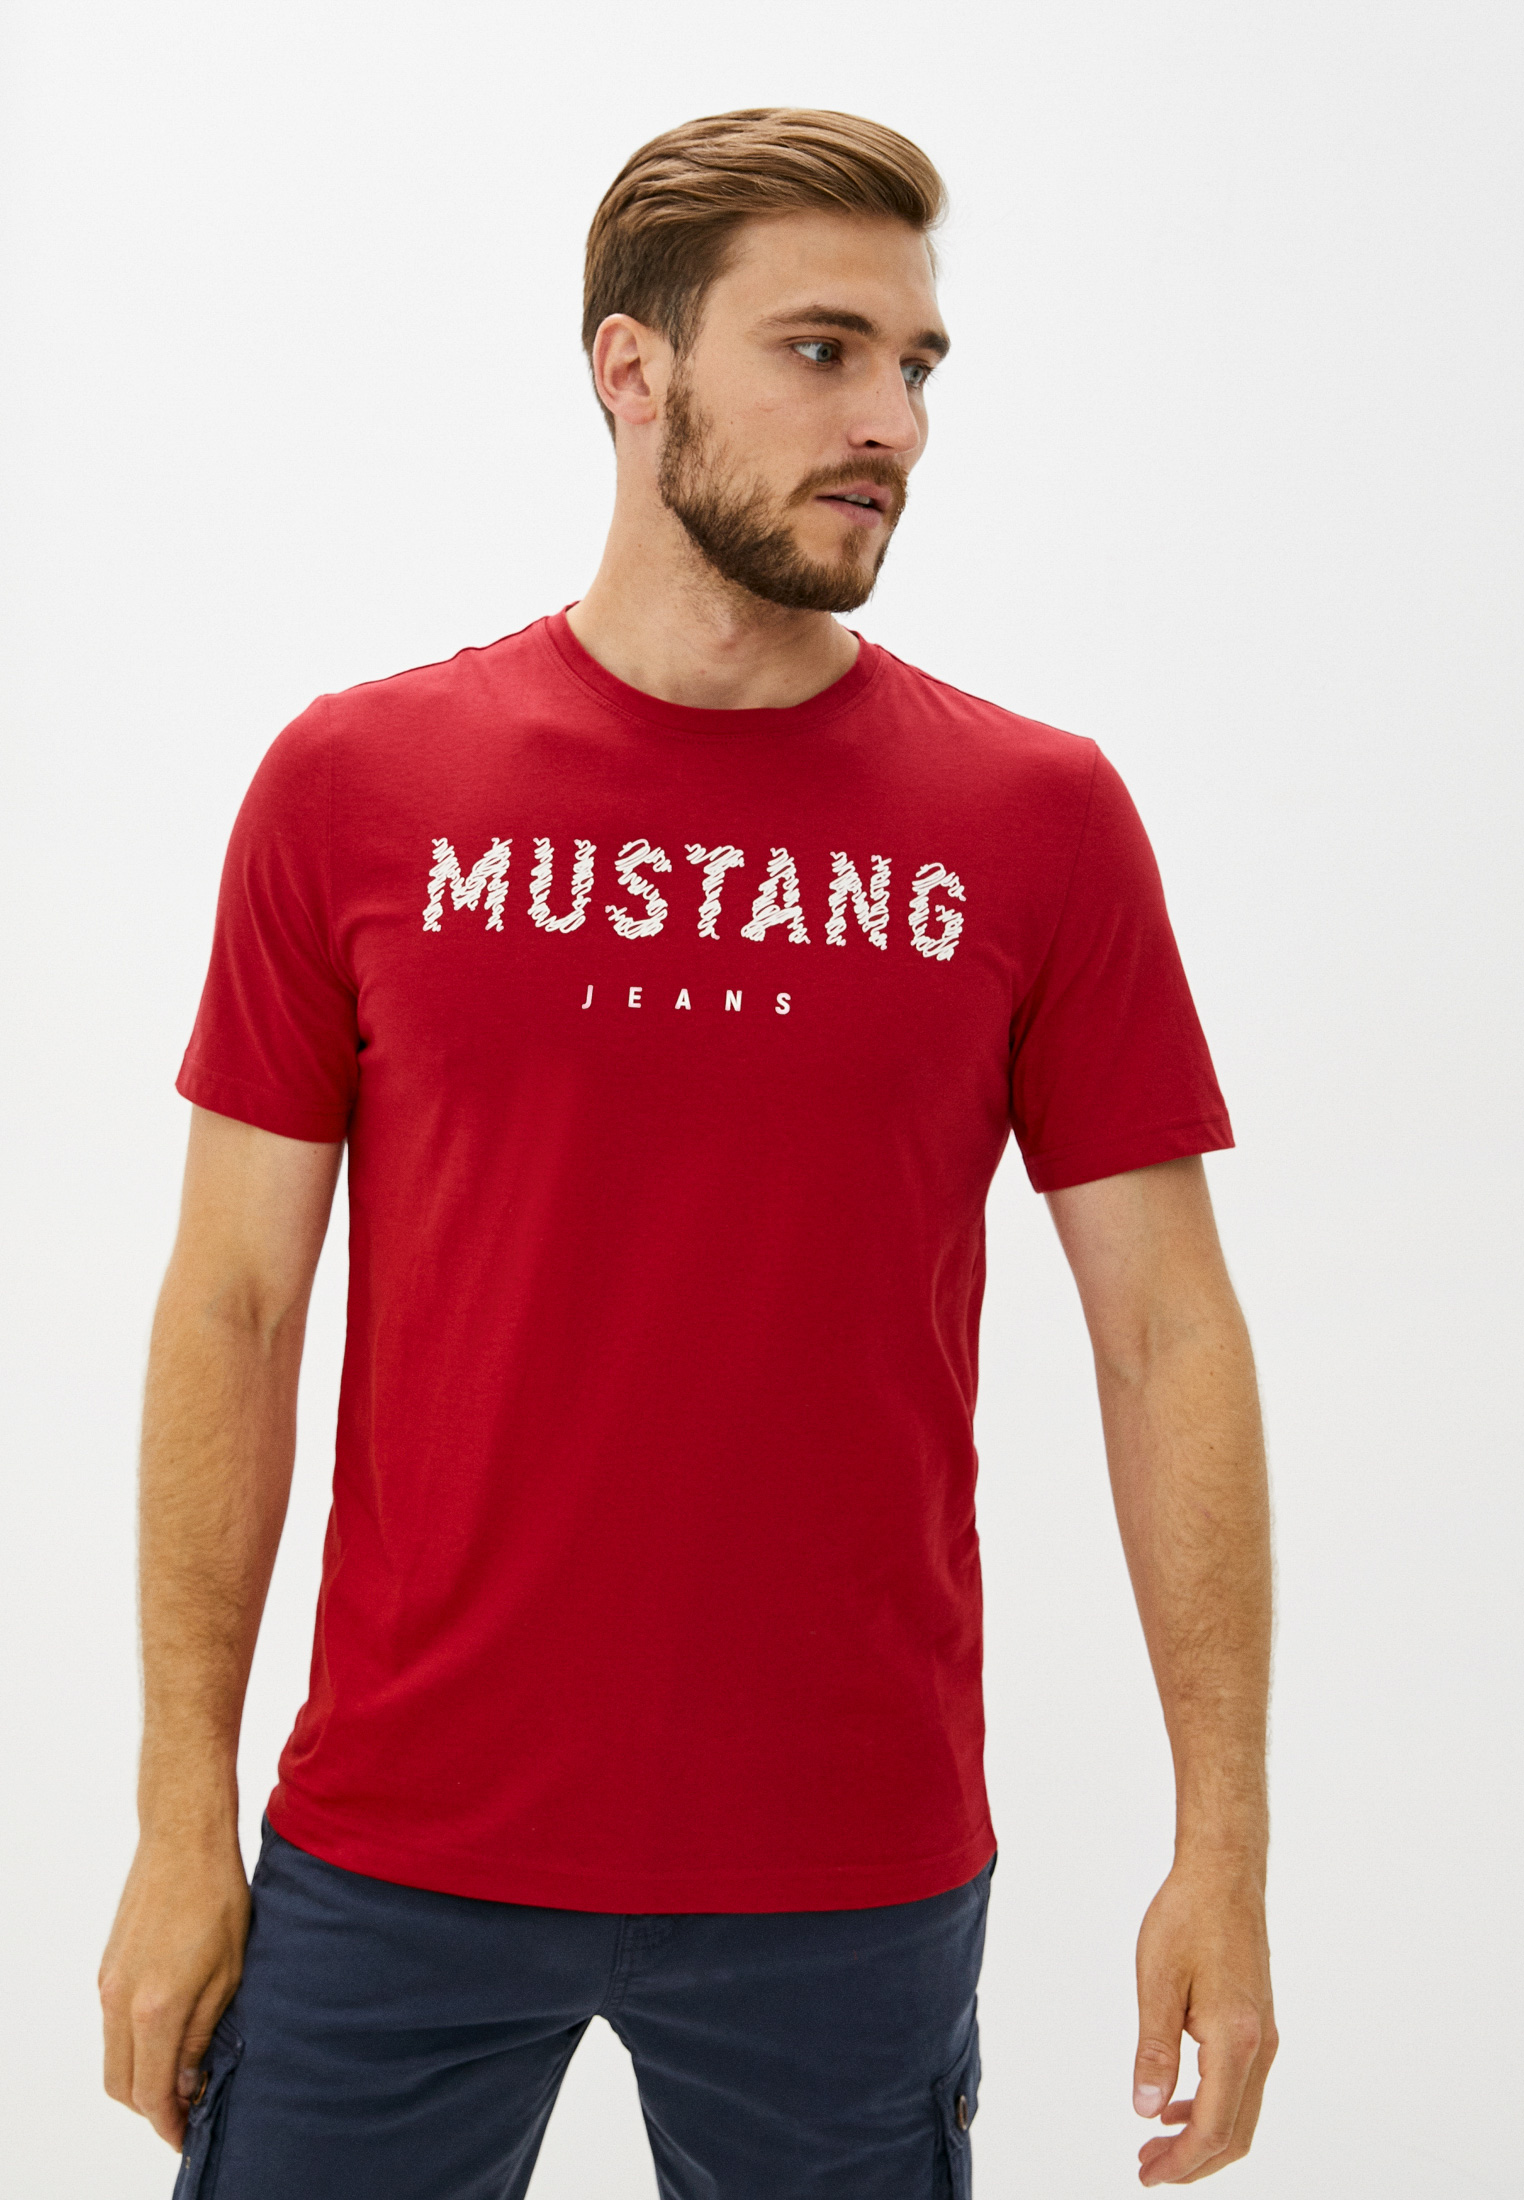 Красный алекс. Мустанг красная футболка мужская. Майка Мустанг мужская. Футболка Мустанг мужская. Футболка Mustang мужская белая.